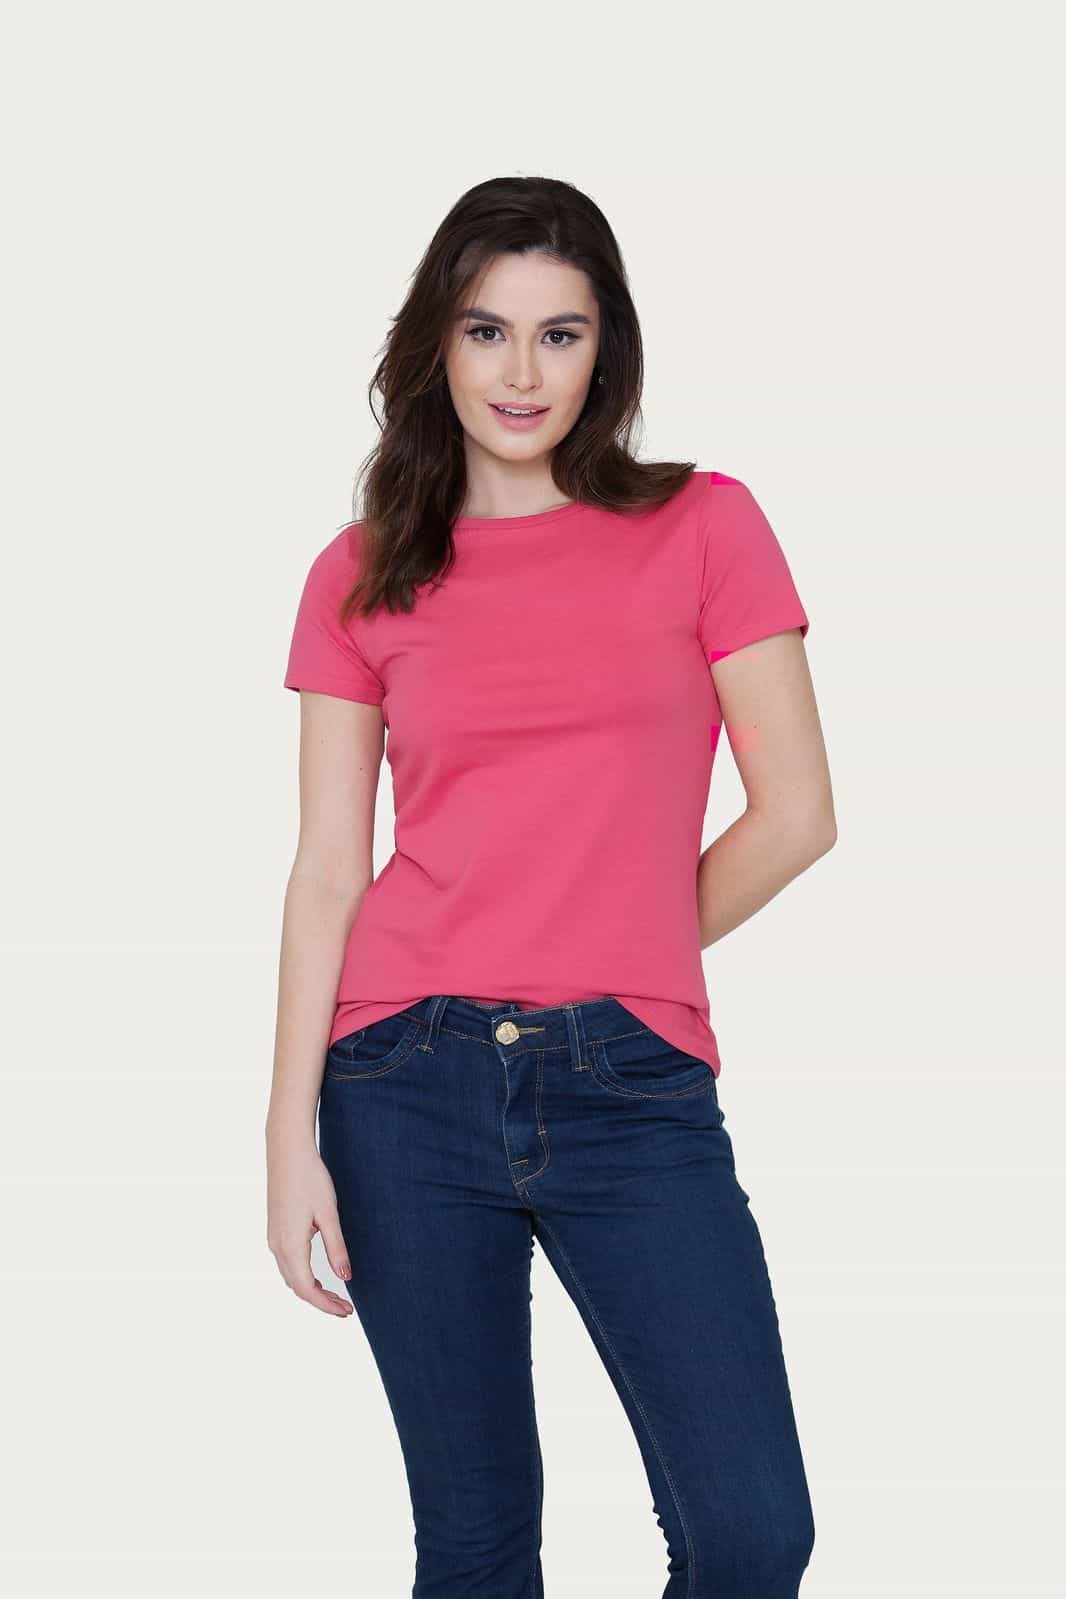 Camiseta Básica Feminina Algodão Premium Slim Fit Decote Redondo Rosa